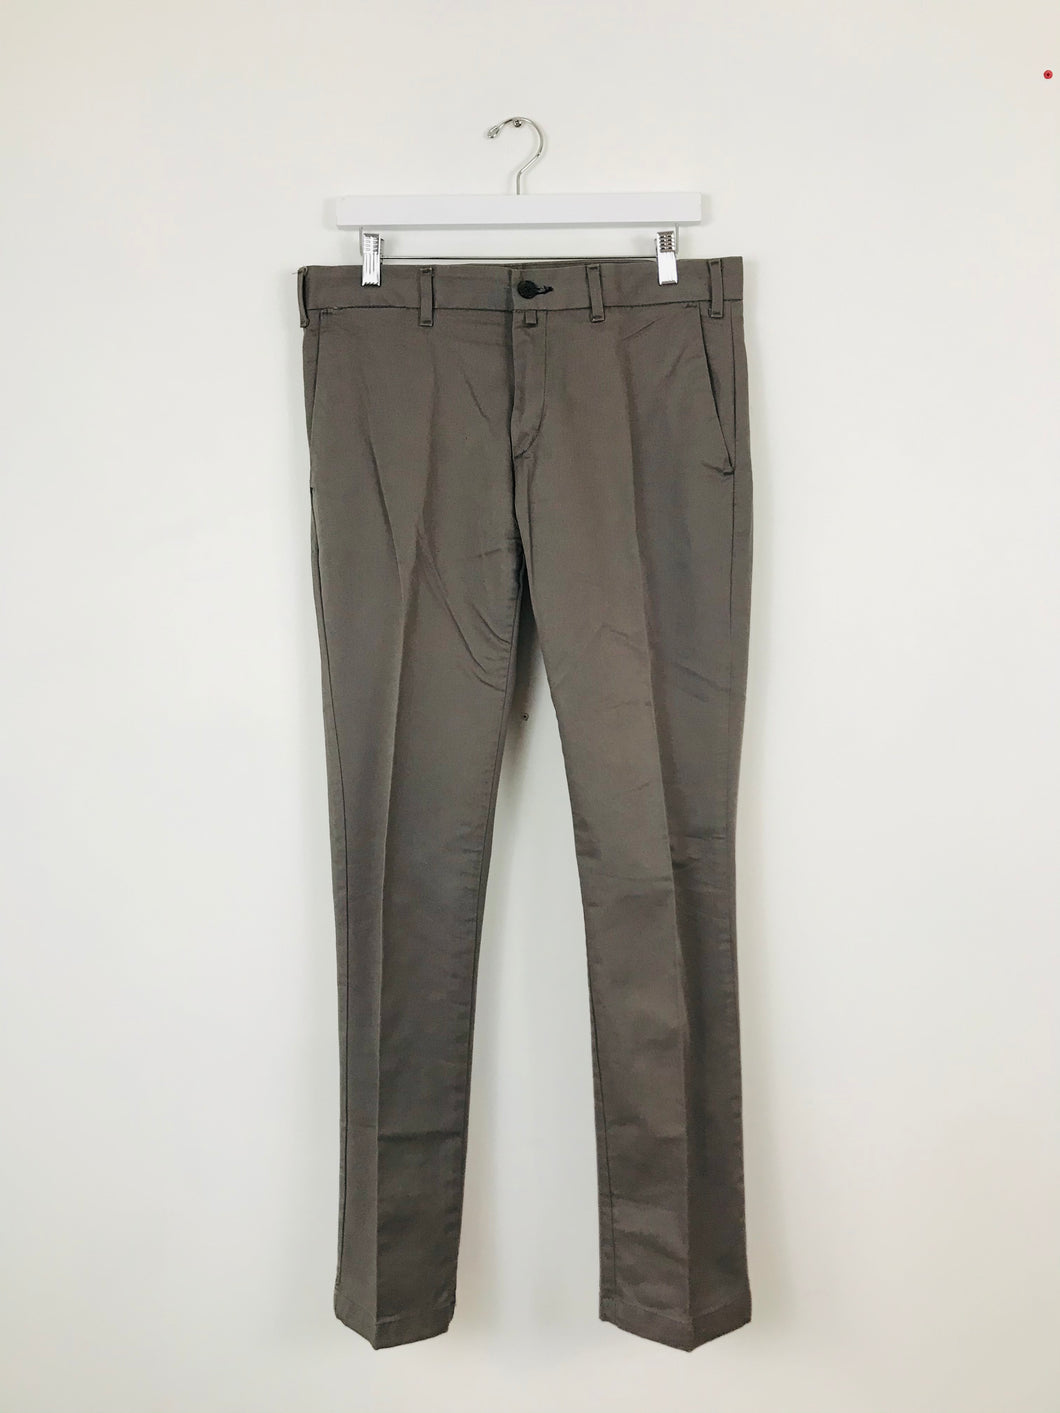 Zara Youth Men’s Chino Trousers | 40 UK31 | Grey